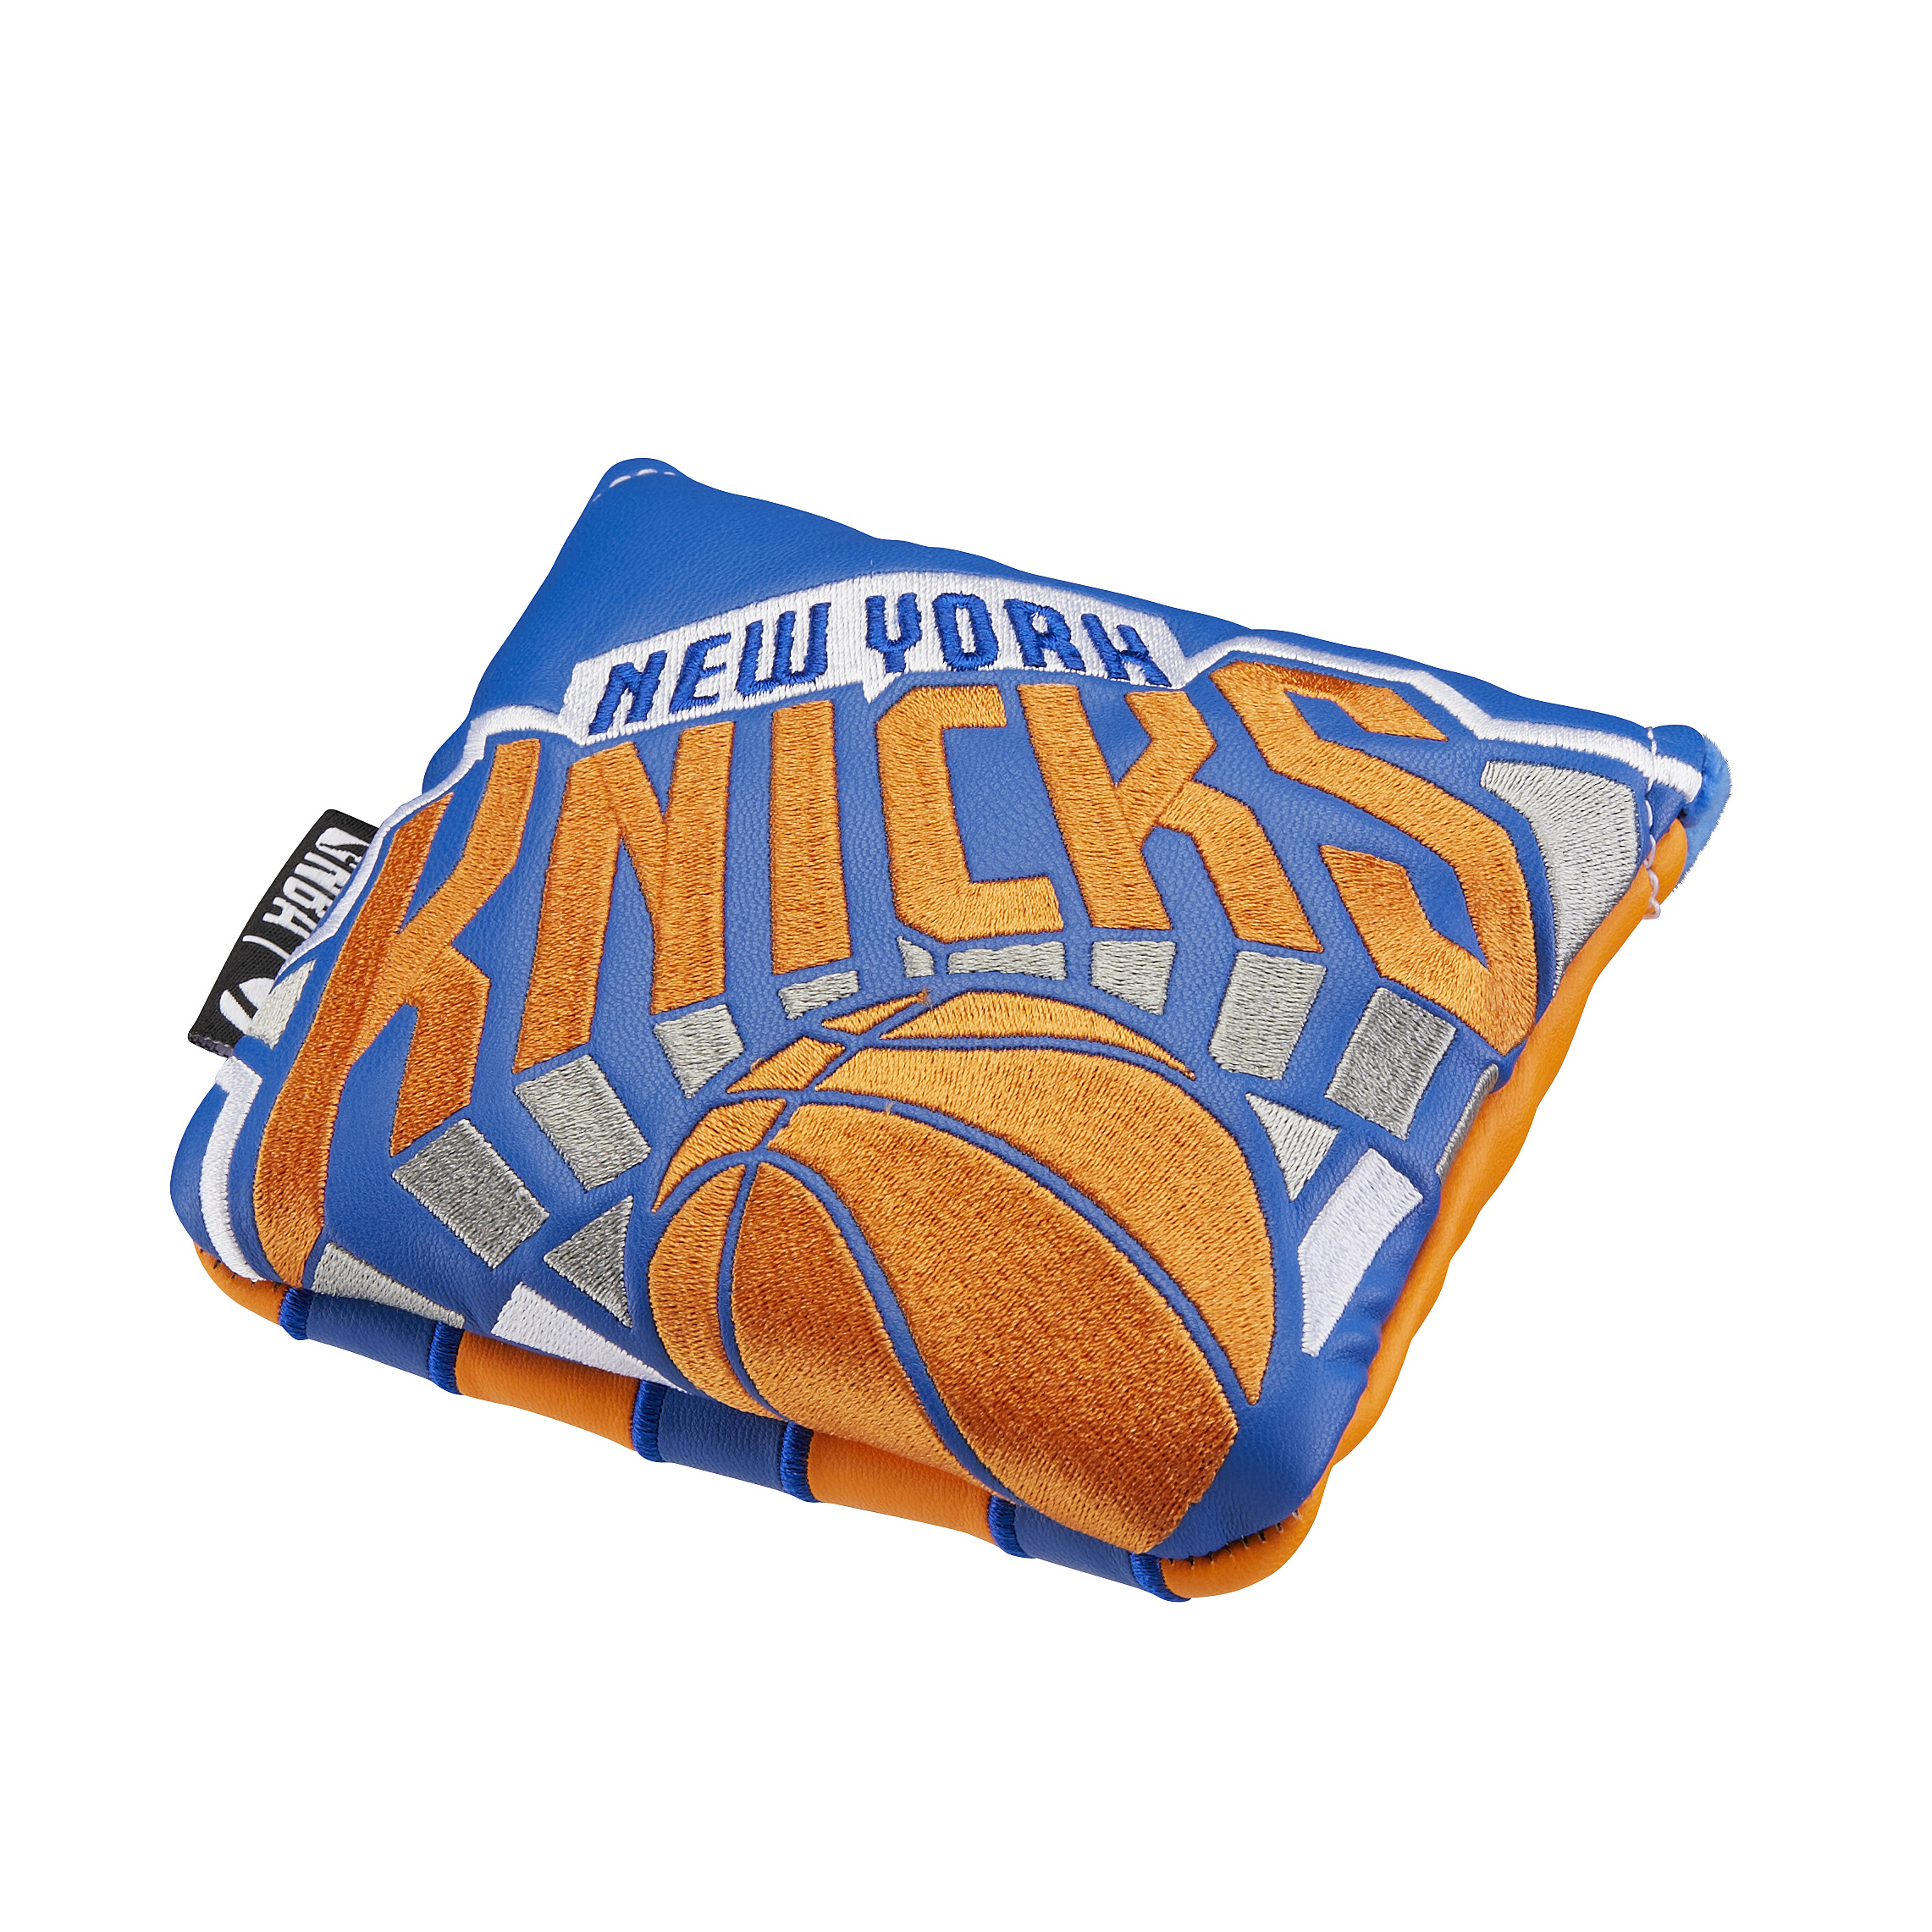 New York Knicksスパイダーヘッドカバー /の画像